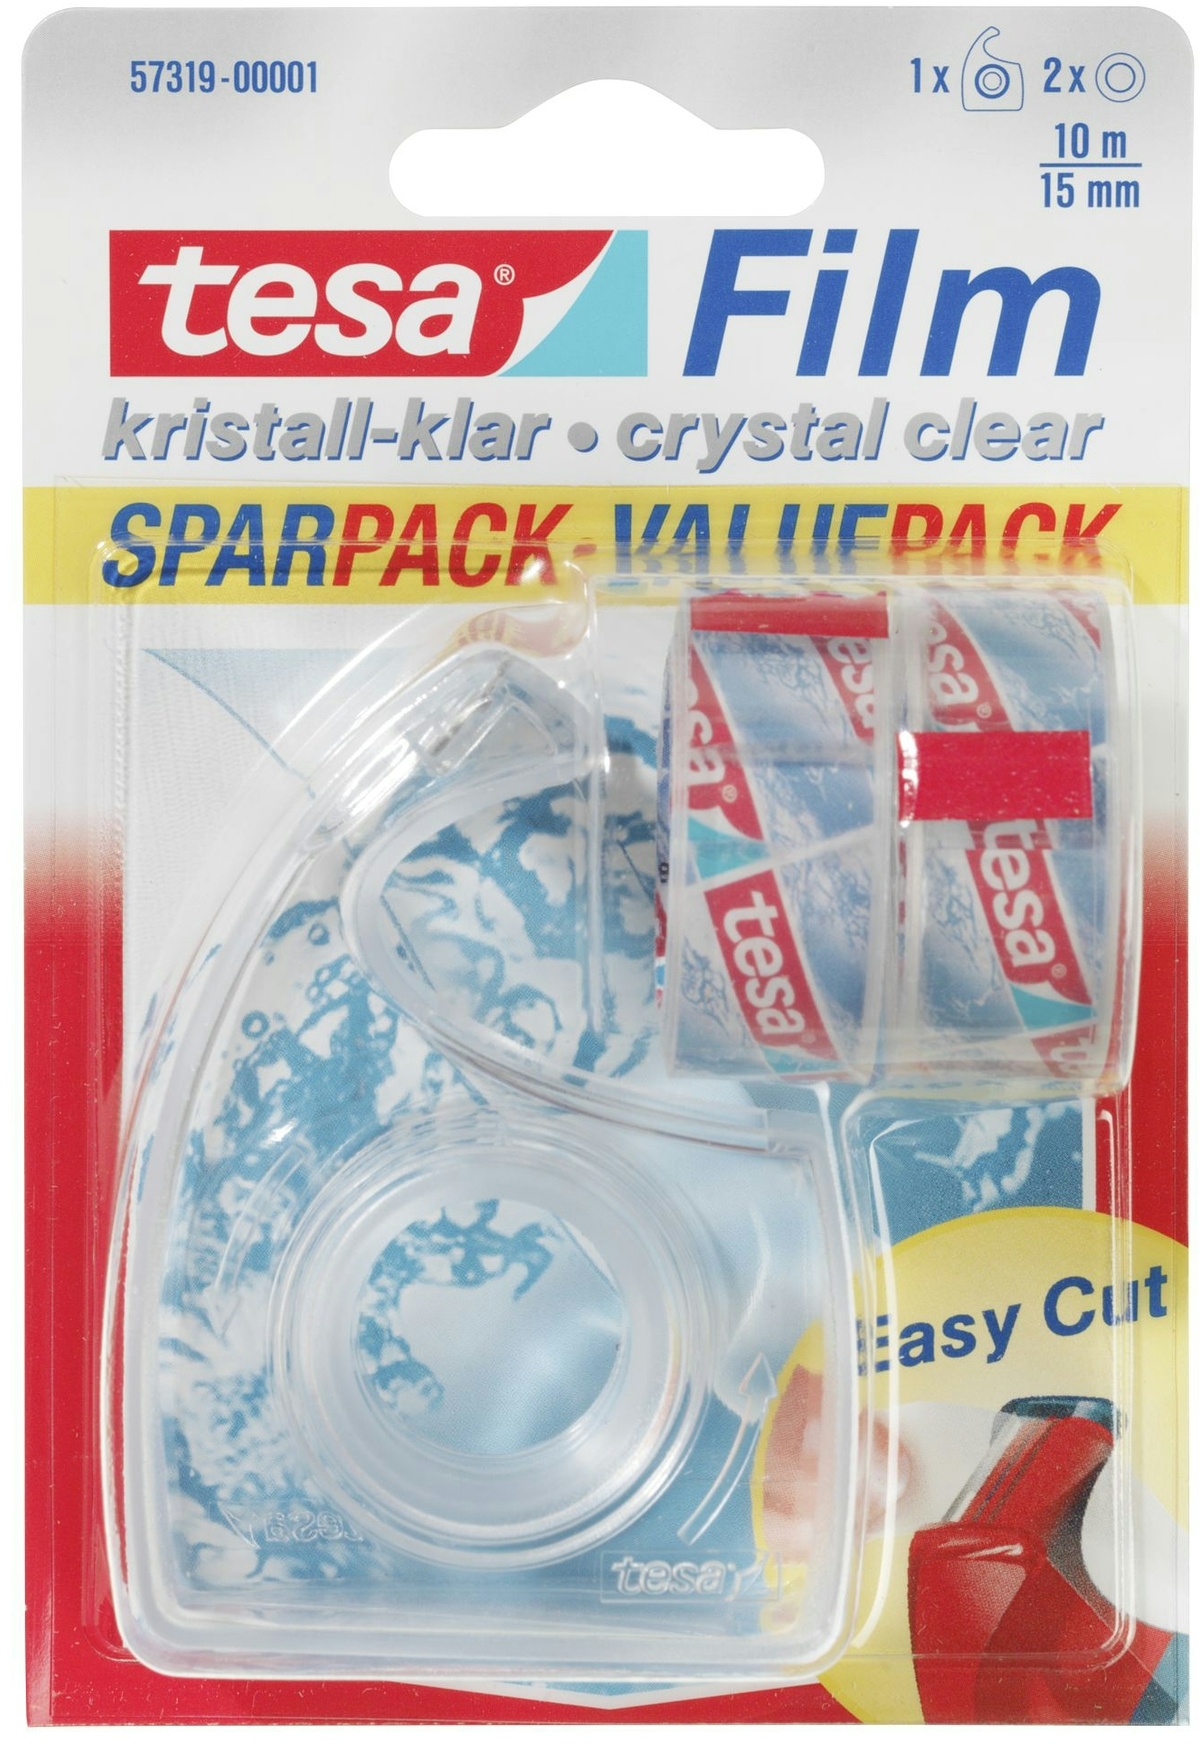 Tesa Film kristall-klar Sparpack